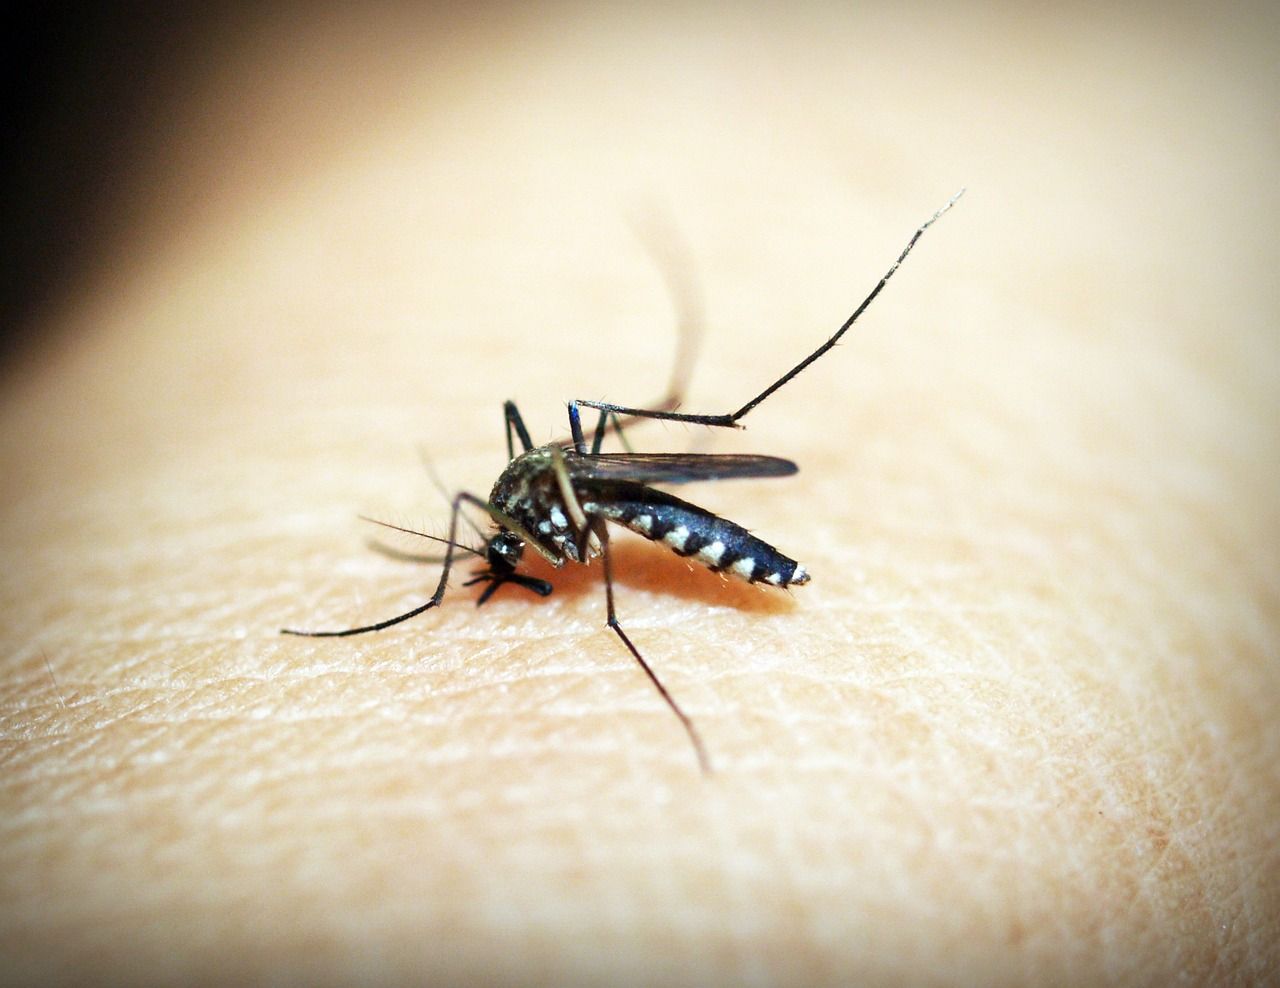 Cinci cazuri de malarie, confirmate în Statele Unite după 20 de ani